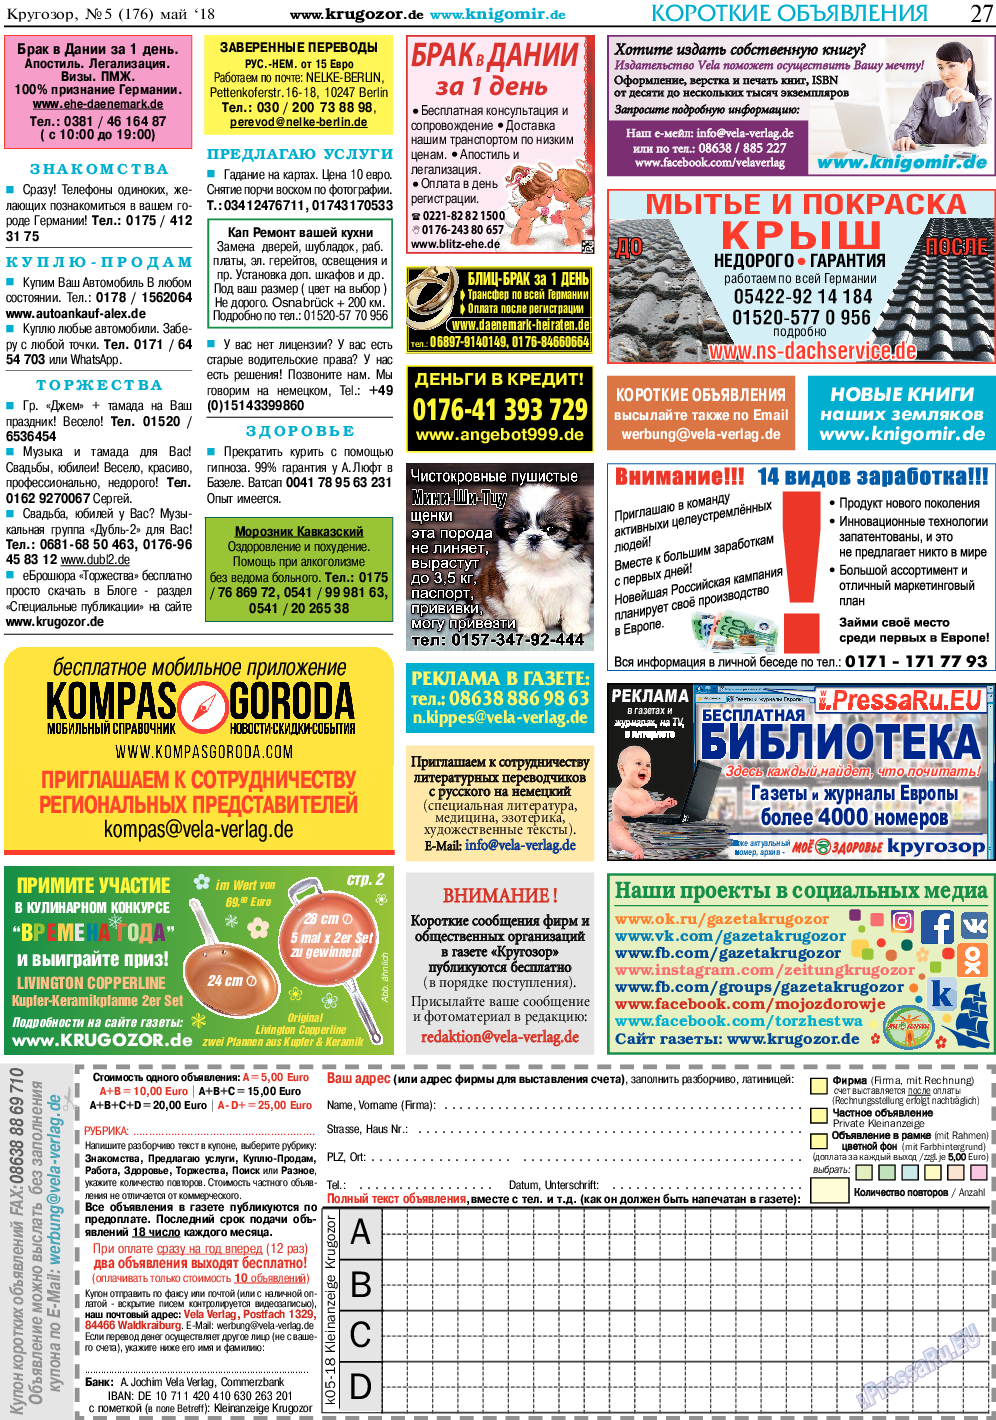 Кругозор, газета. 2018 №5 стр.27